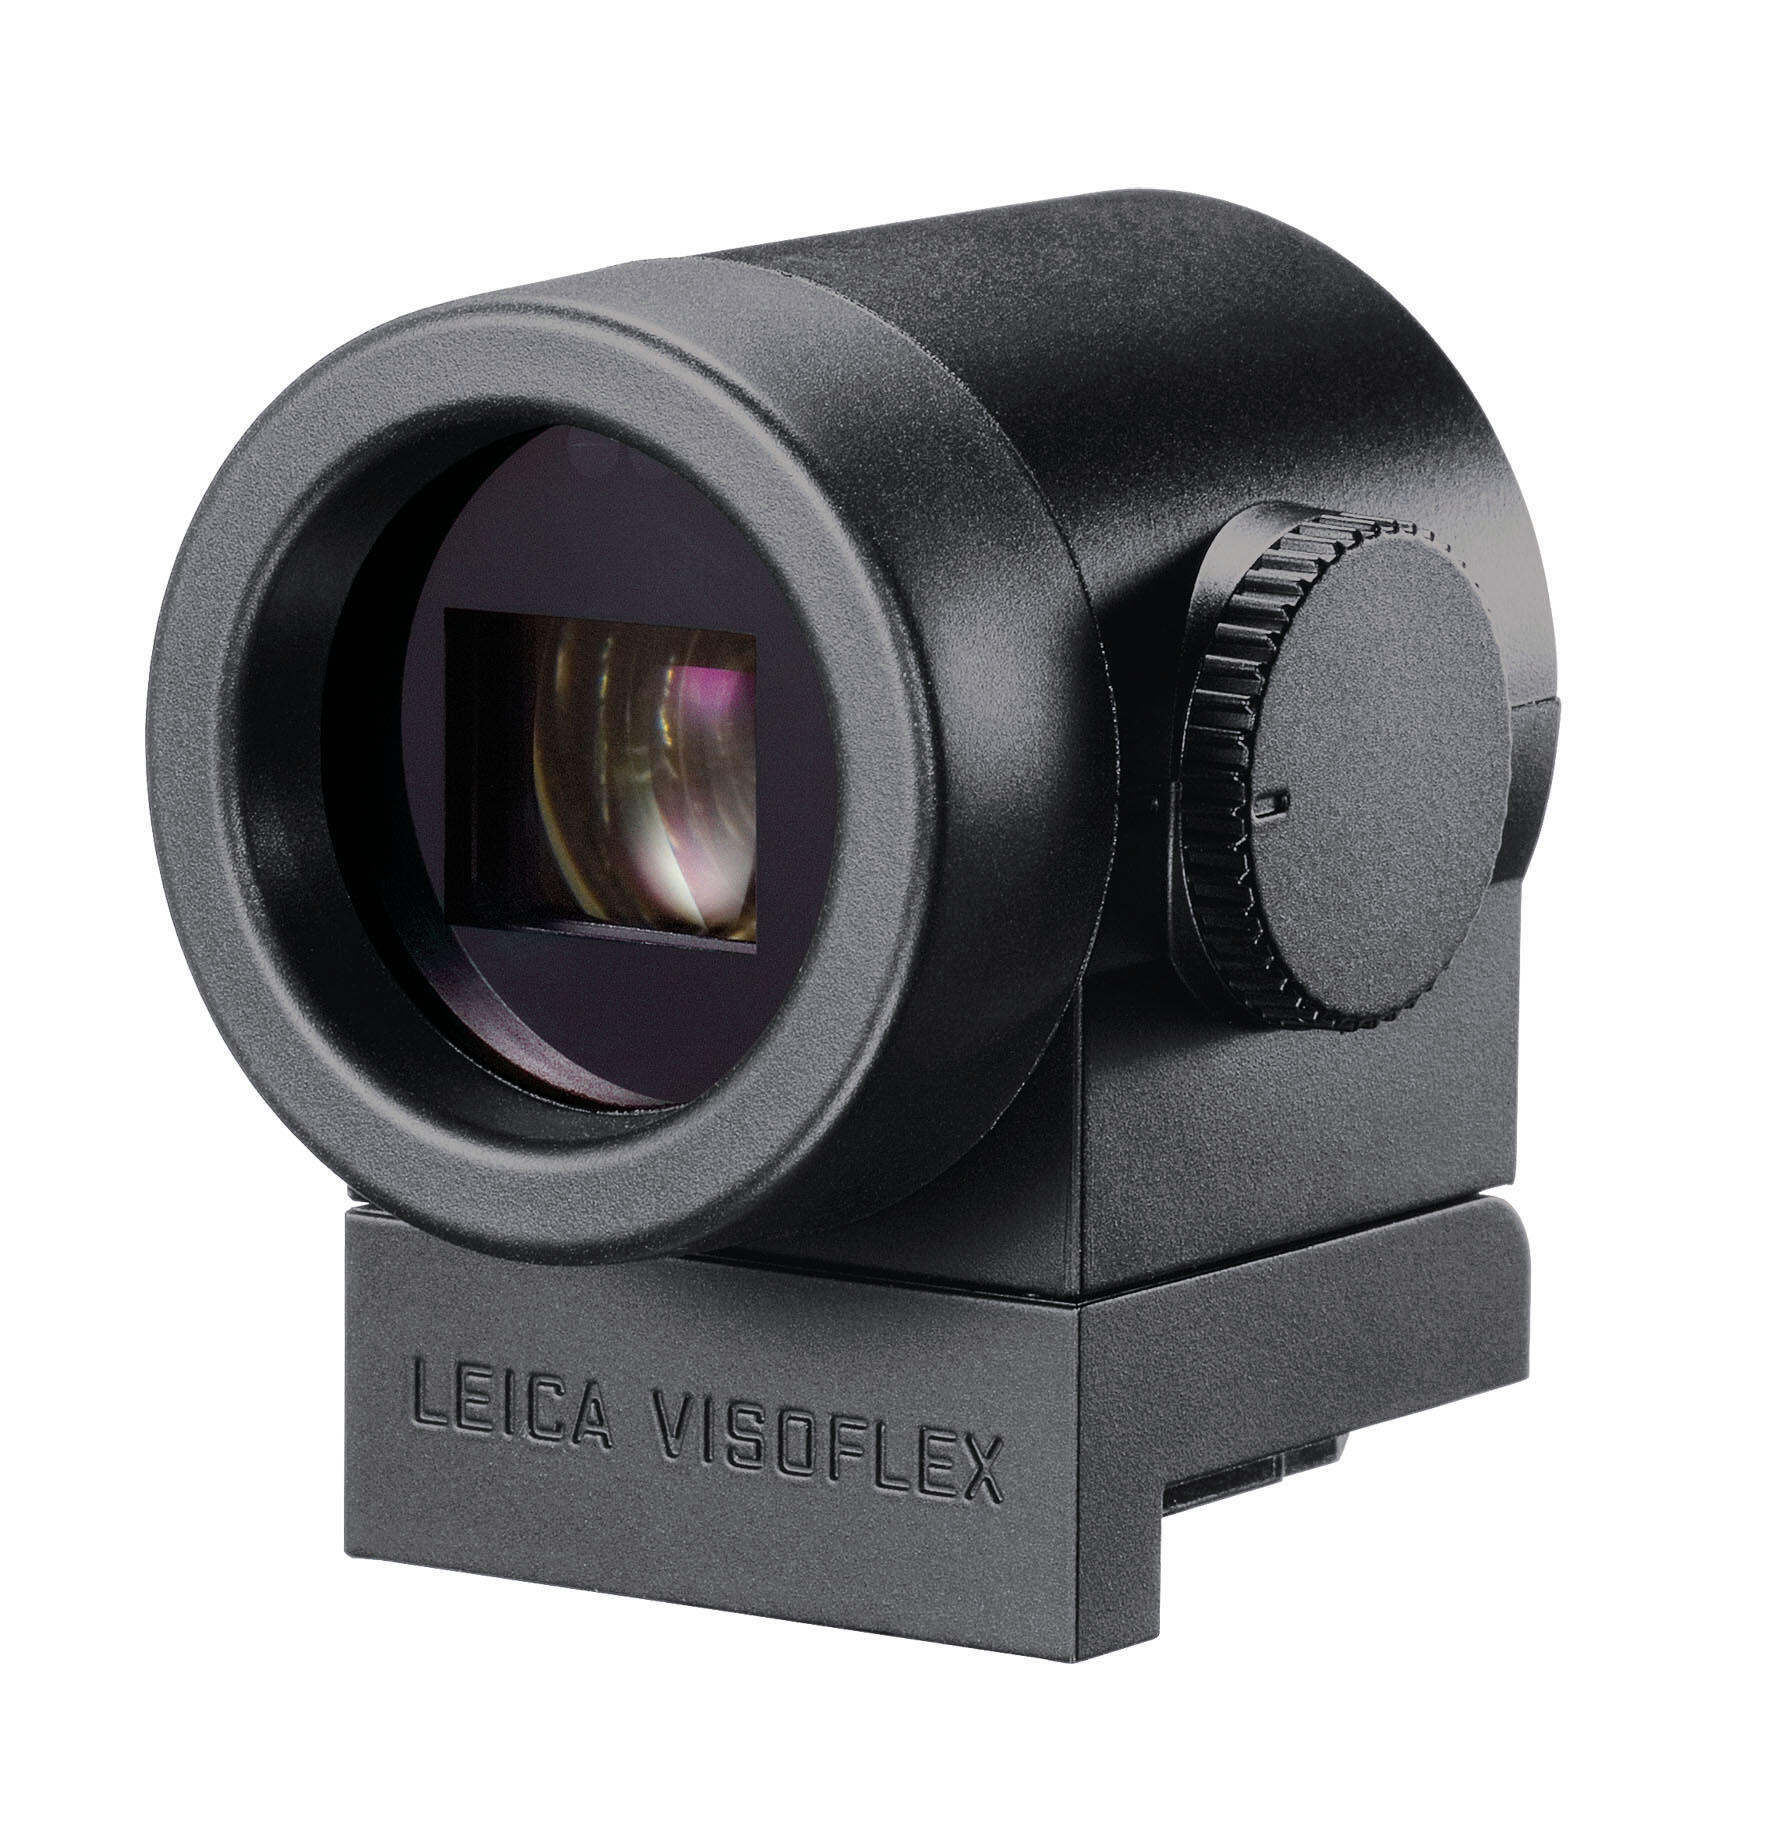 Leica Visoflex (Typ 020) | Leica Camera US